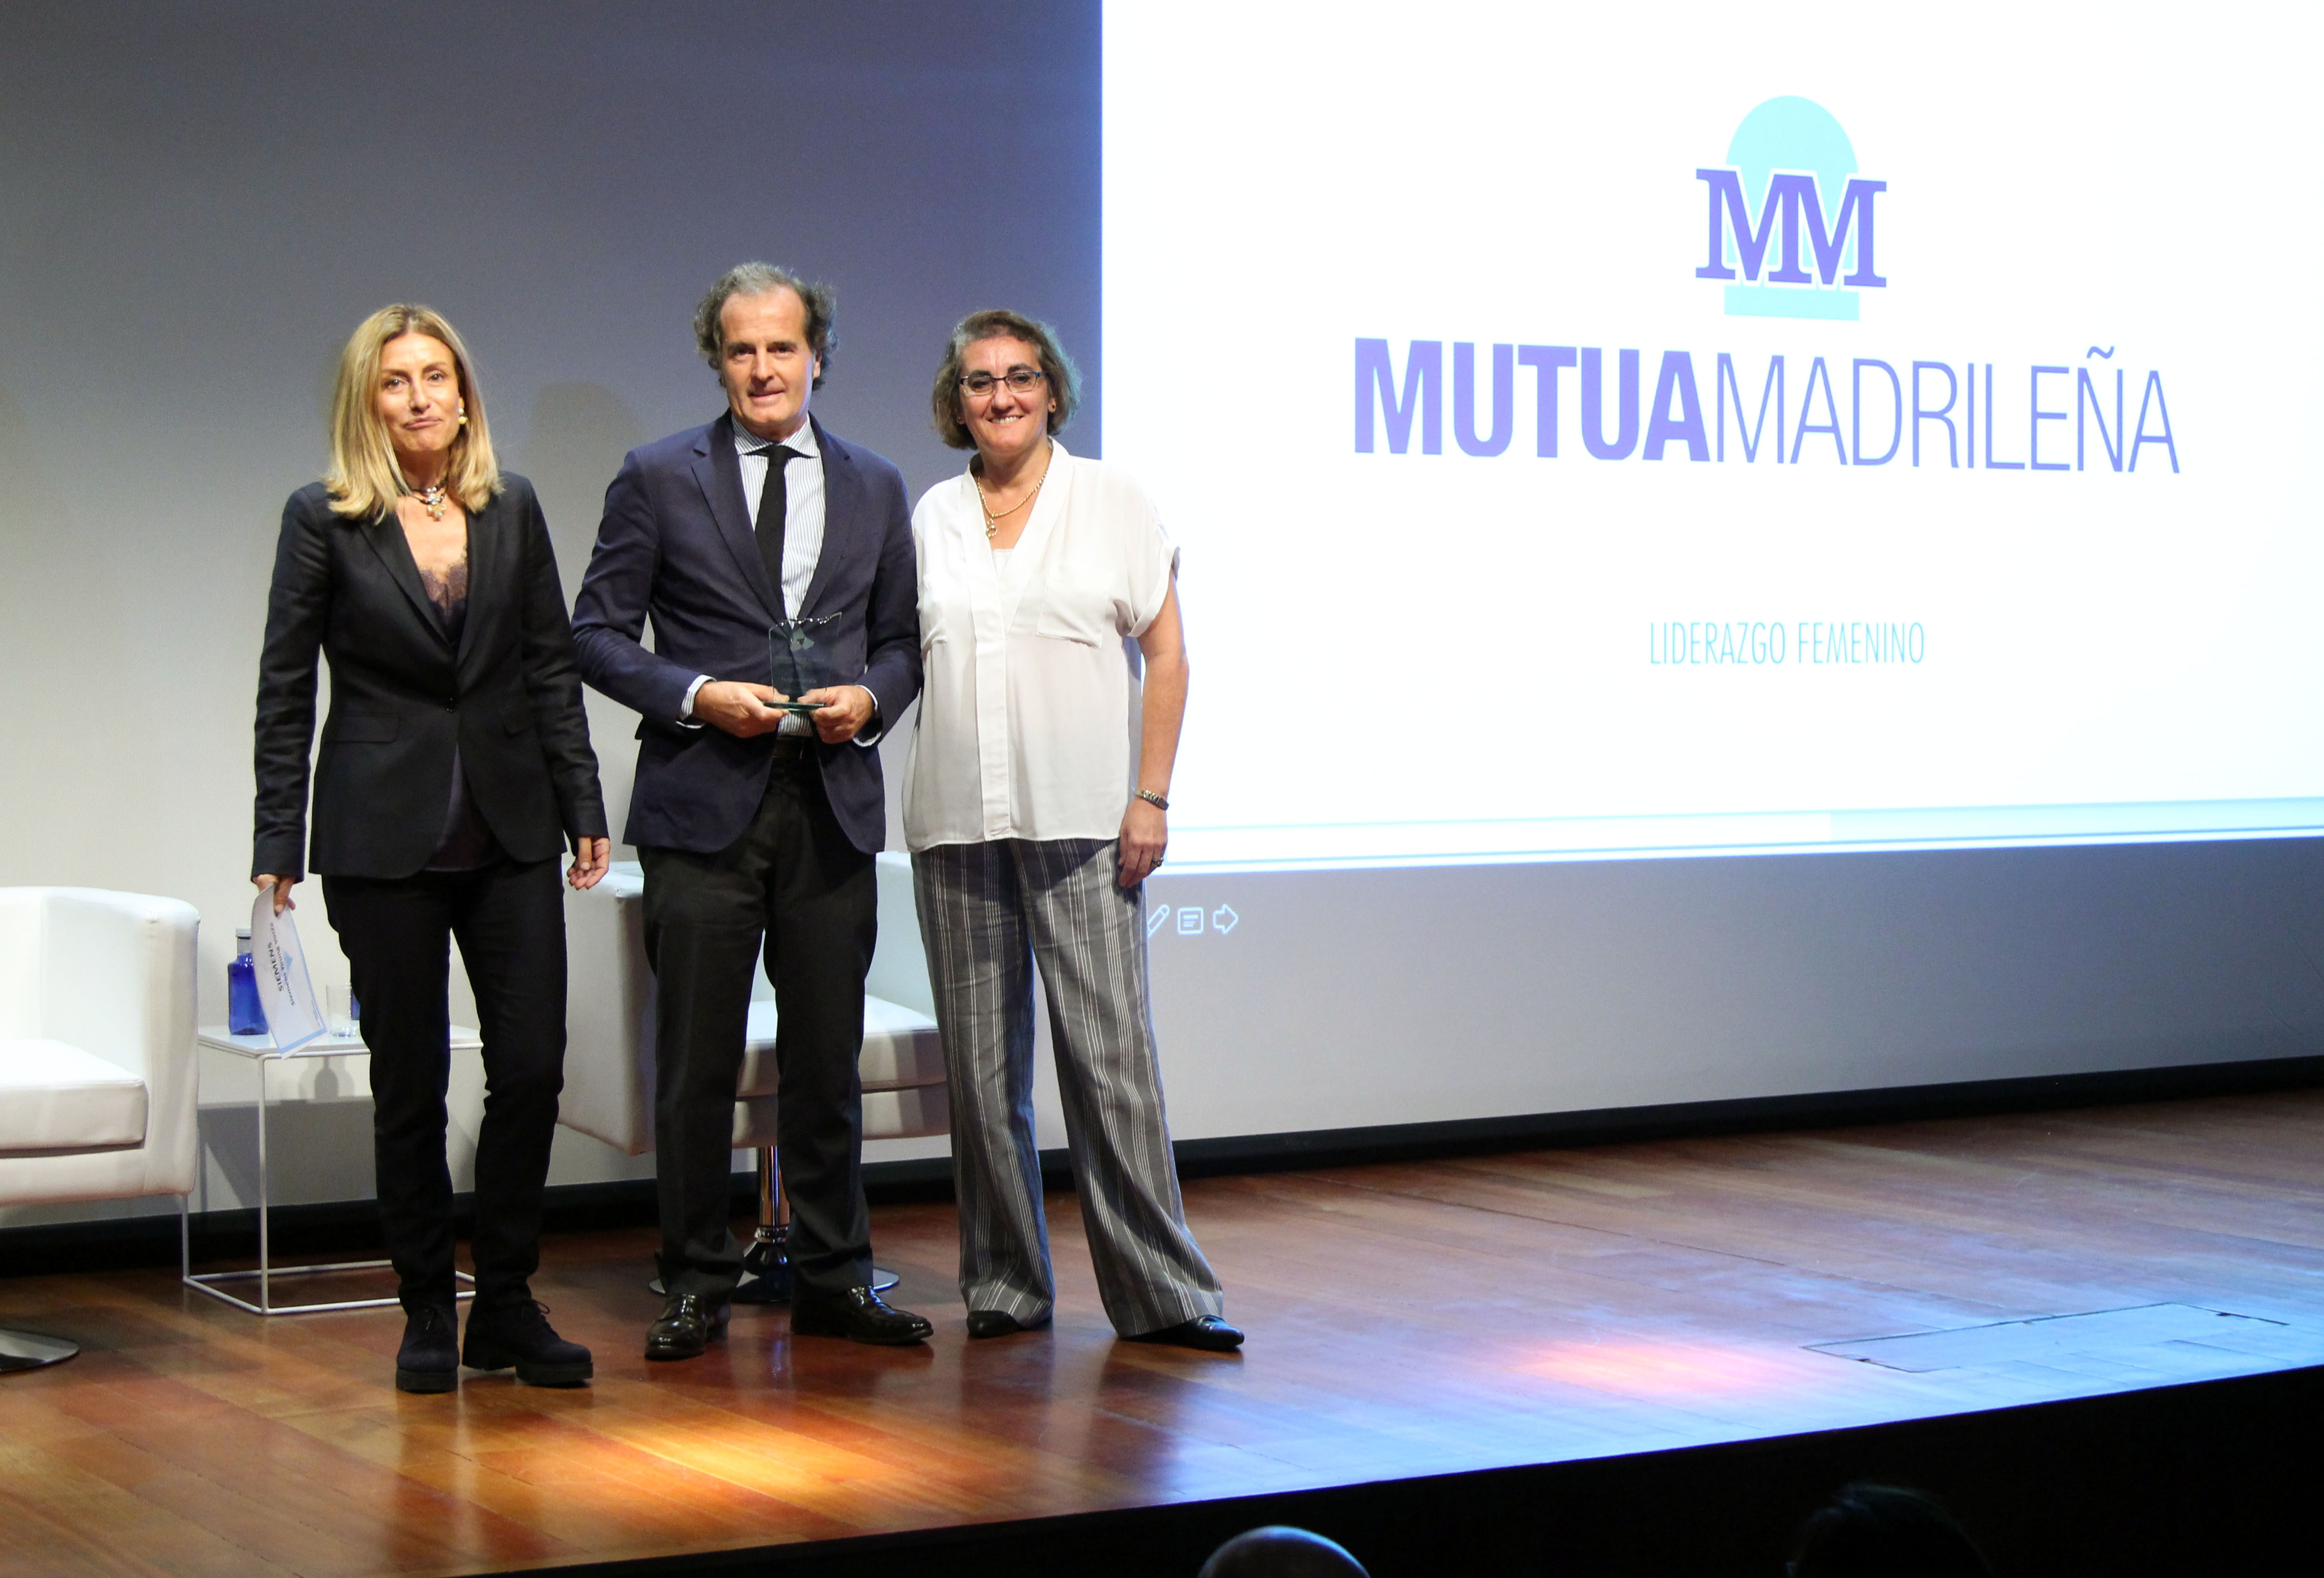 Mutua Madrileña es premiada por su programa ‘Liderazgo Femenino’ que promueve la igualdad en la empresa